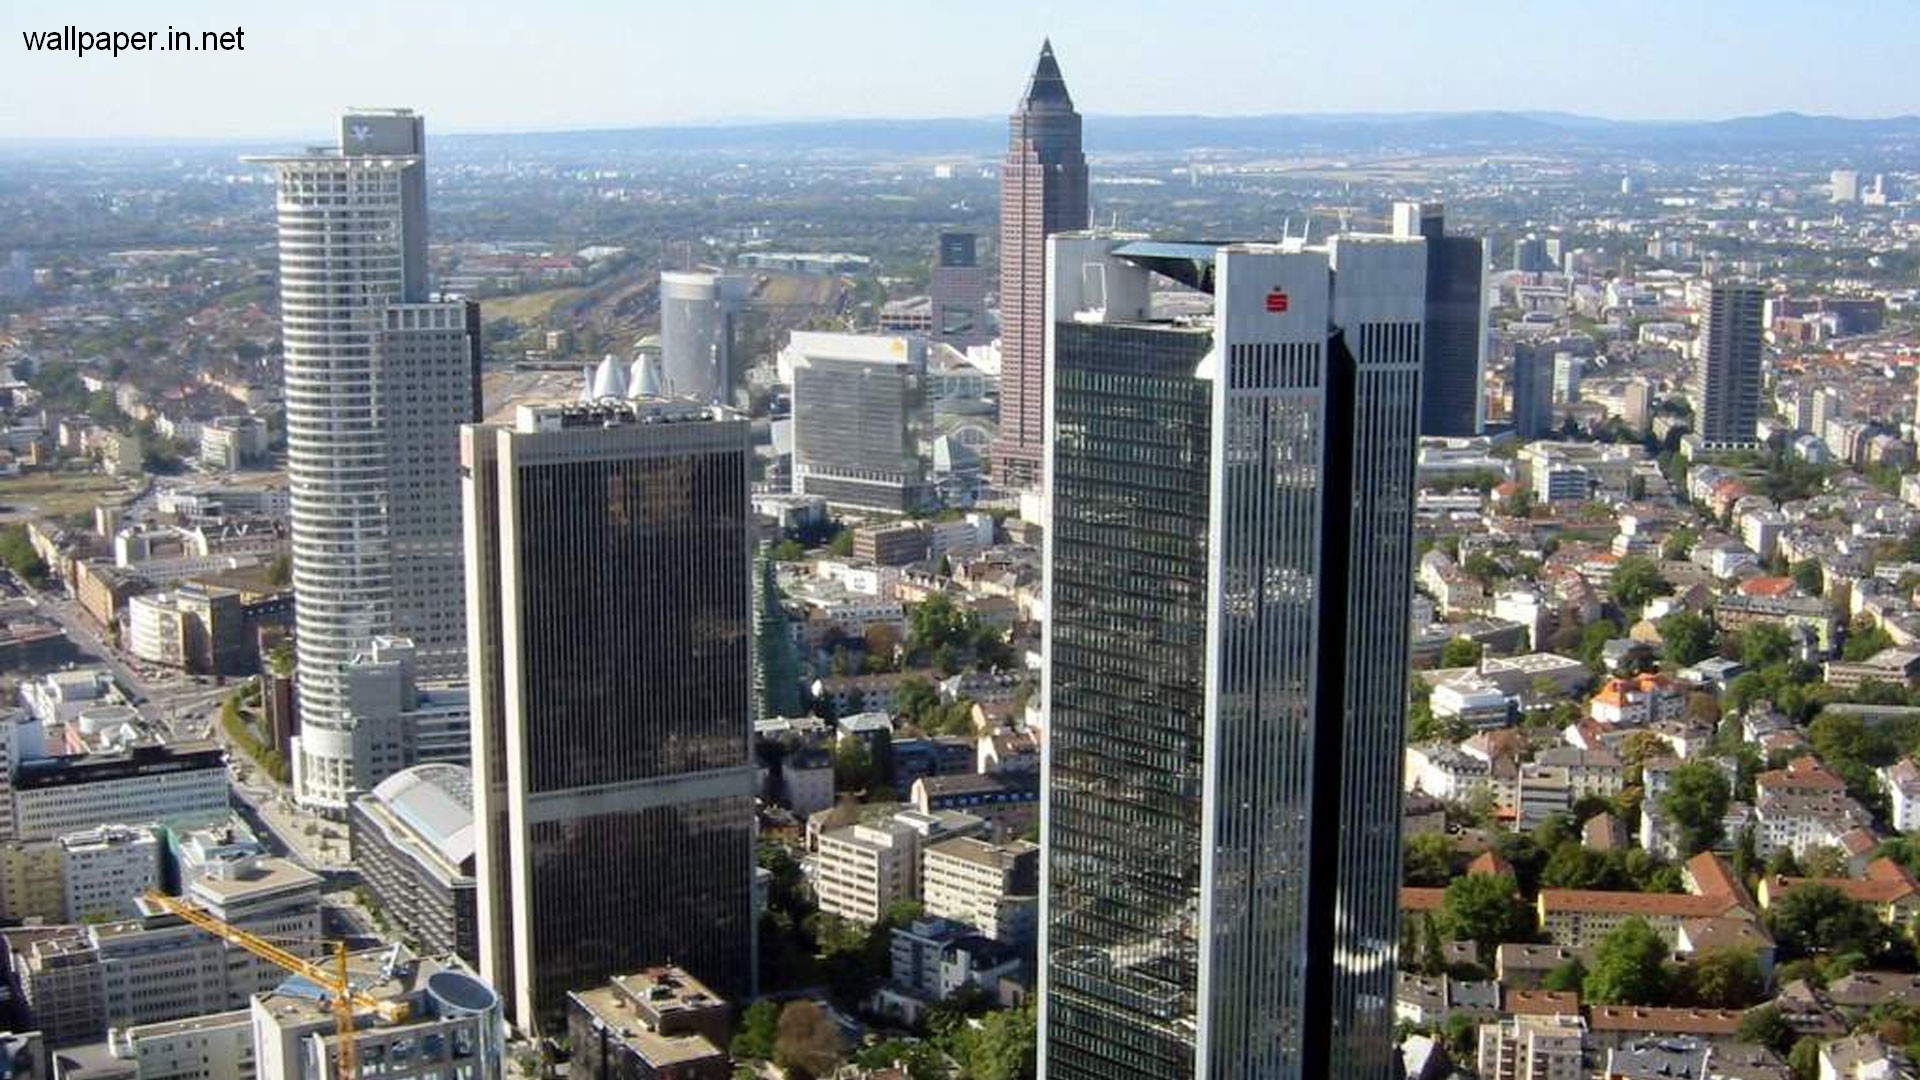 world top wallpaper,metropolitan area,urban area,city,cityscape,skyscraper